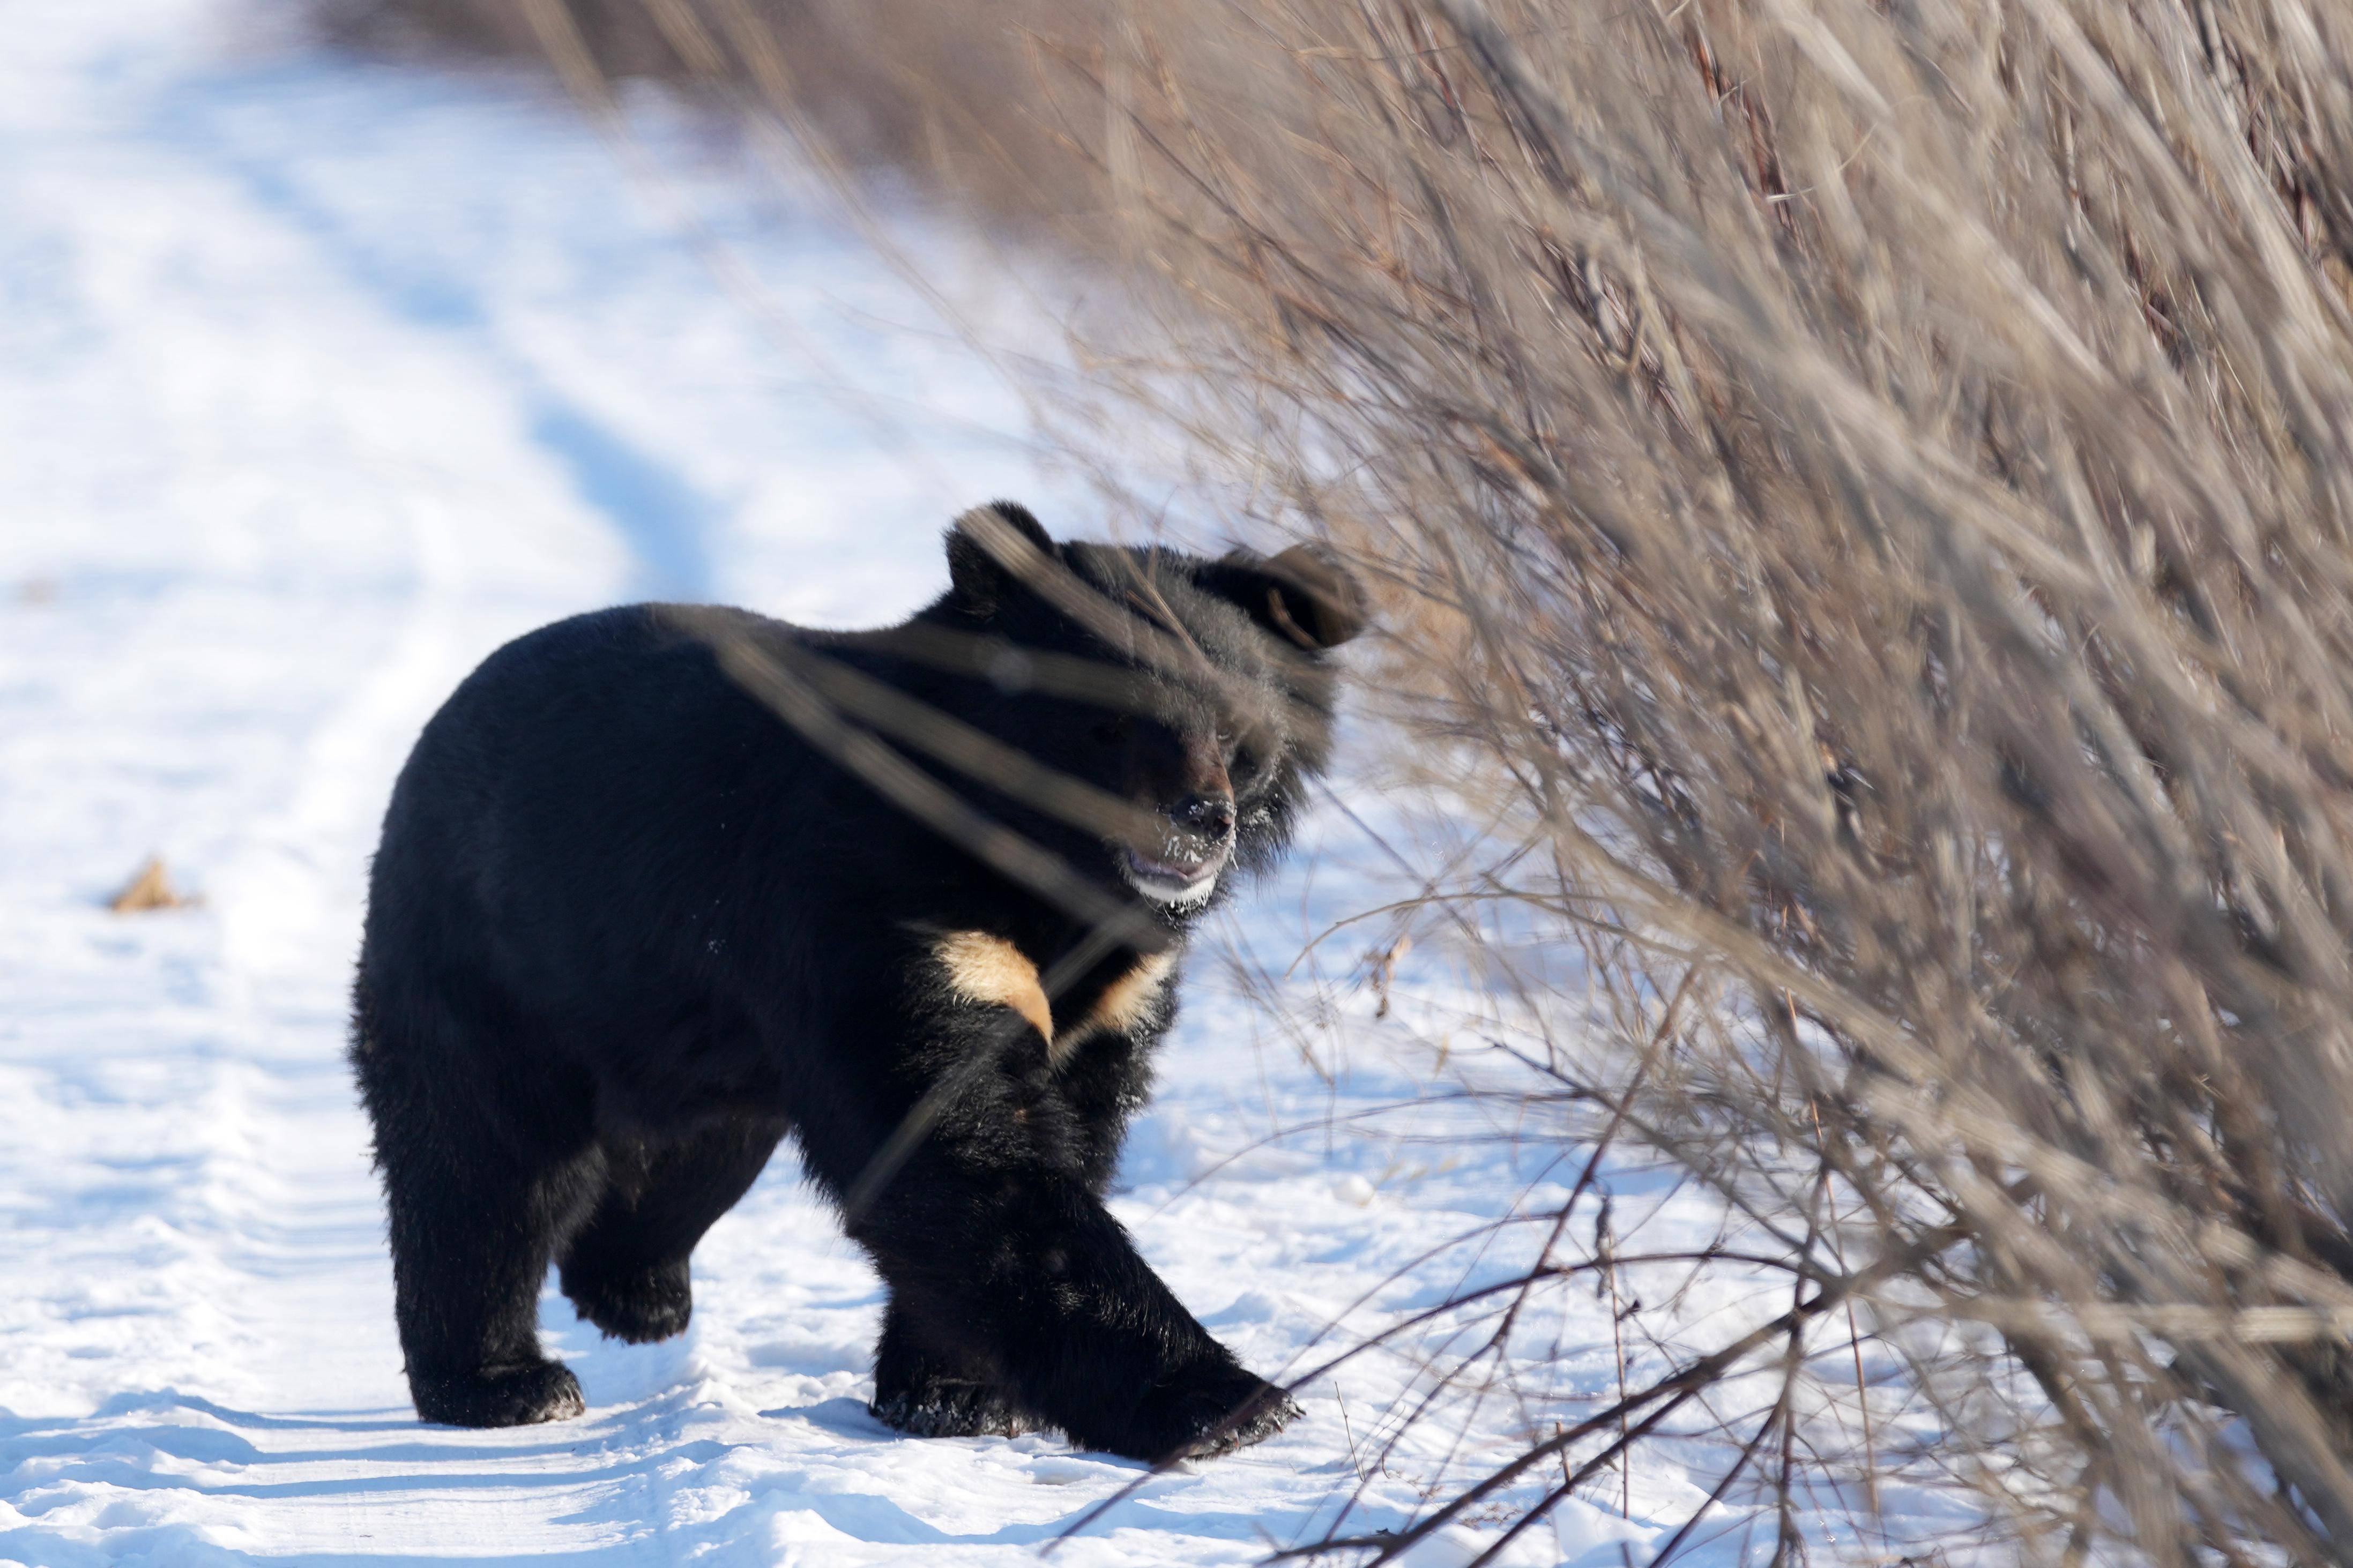 摄探秘野熊园位于华夏东极黑龙江省抚远市,该野熊园以保护黑熊